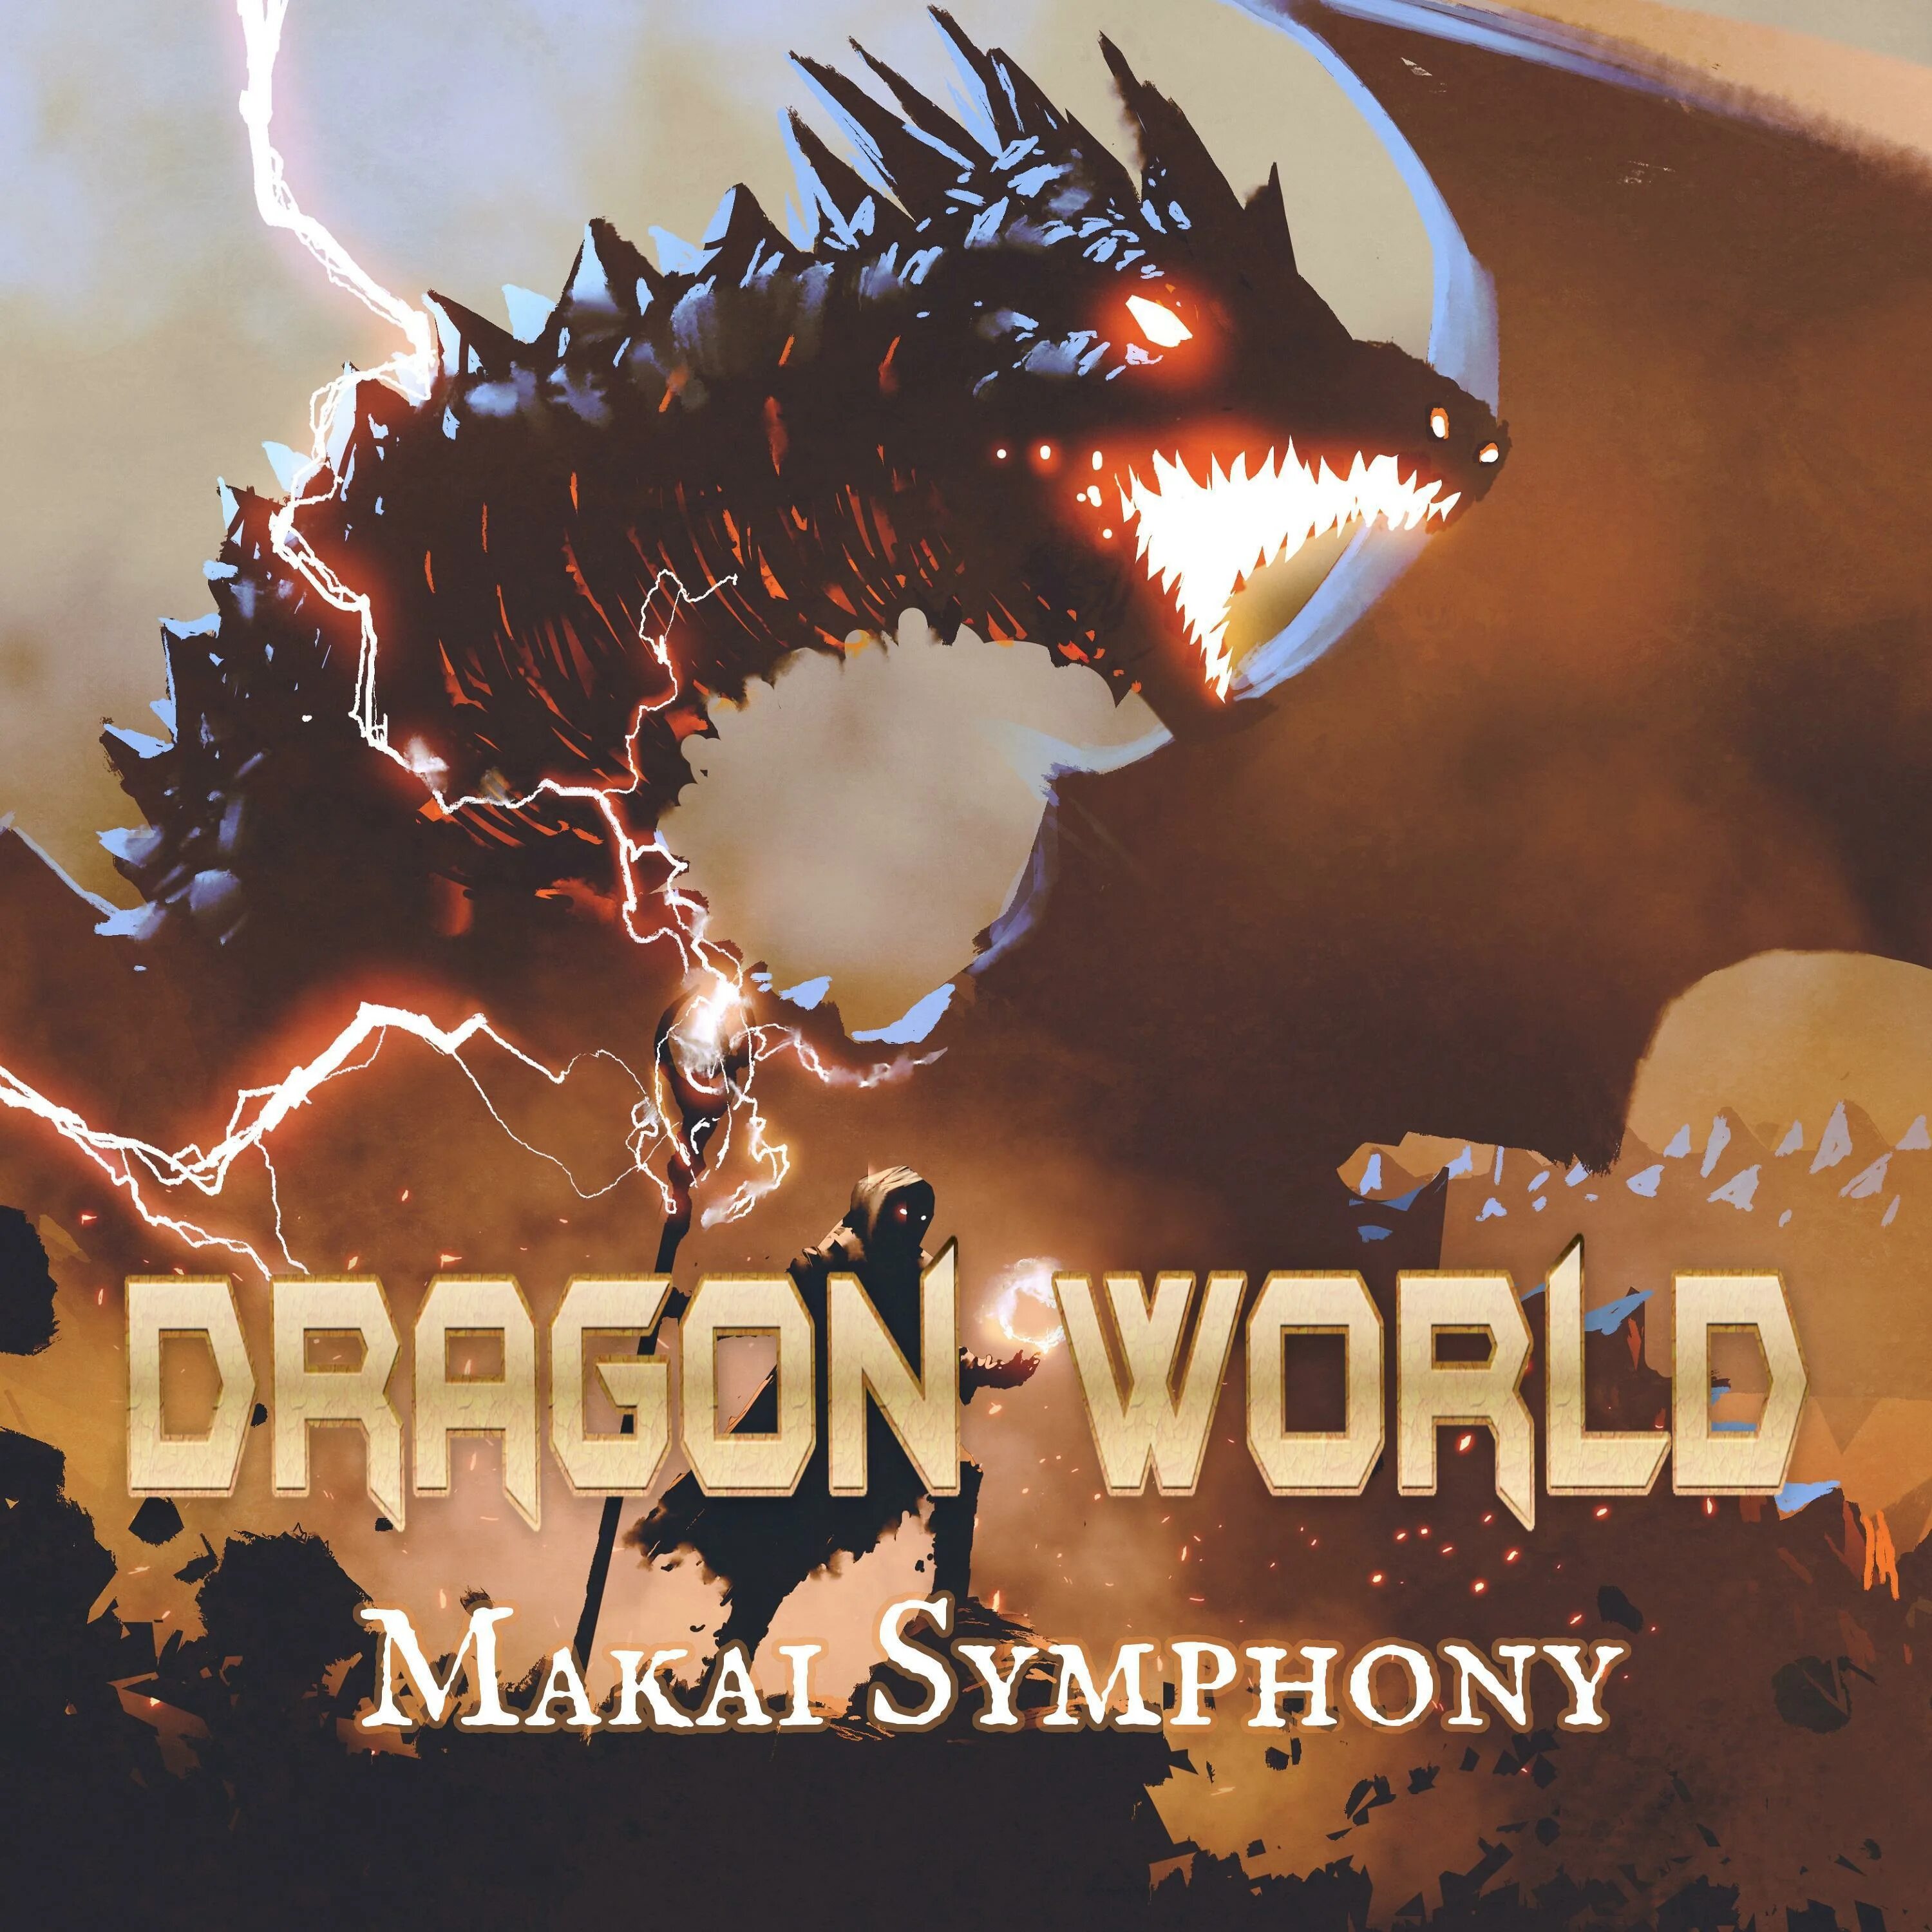 Endless Storm by Makai Symphony. Battle symphony